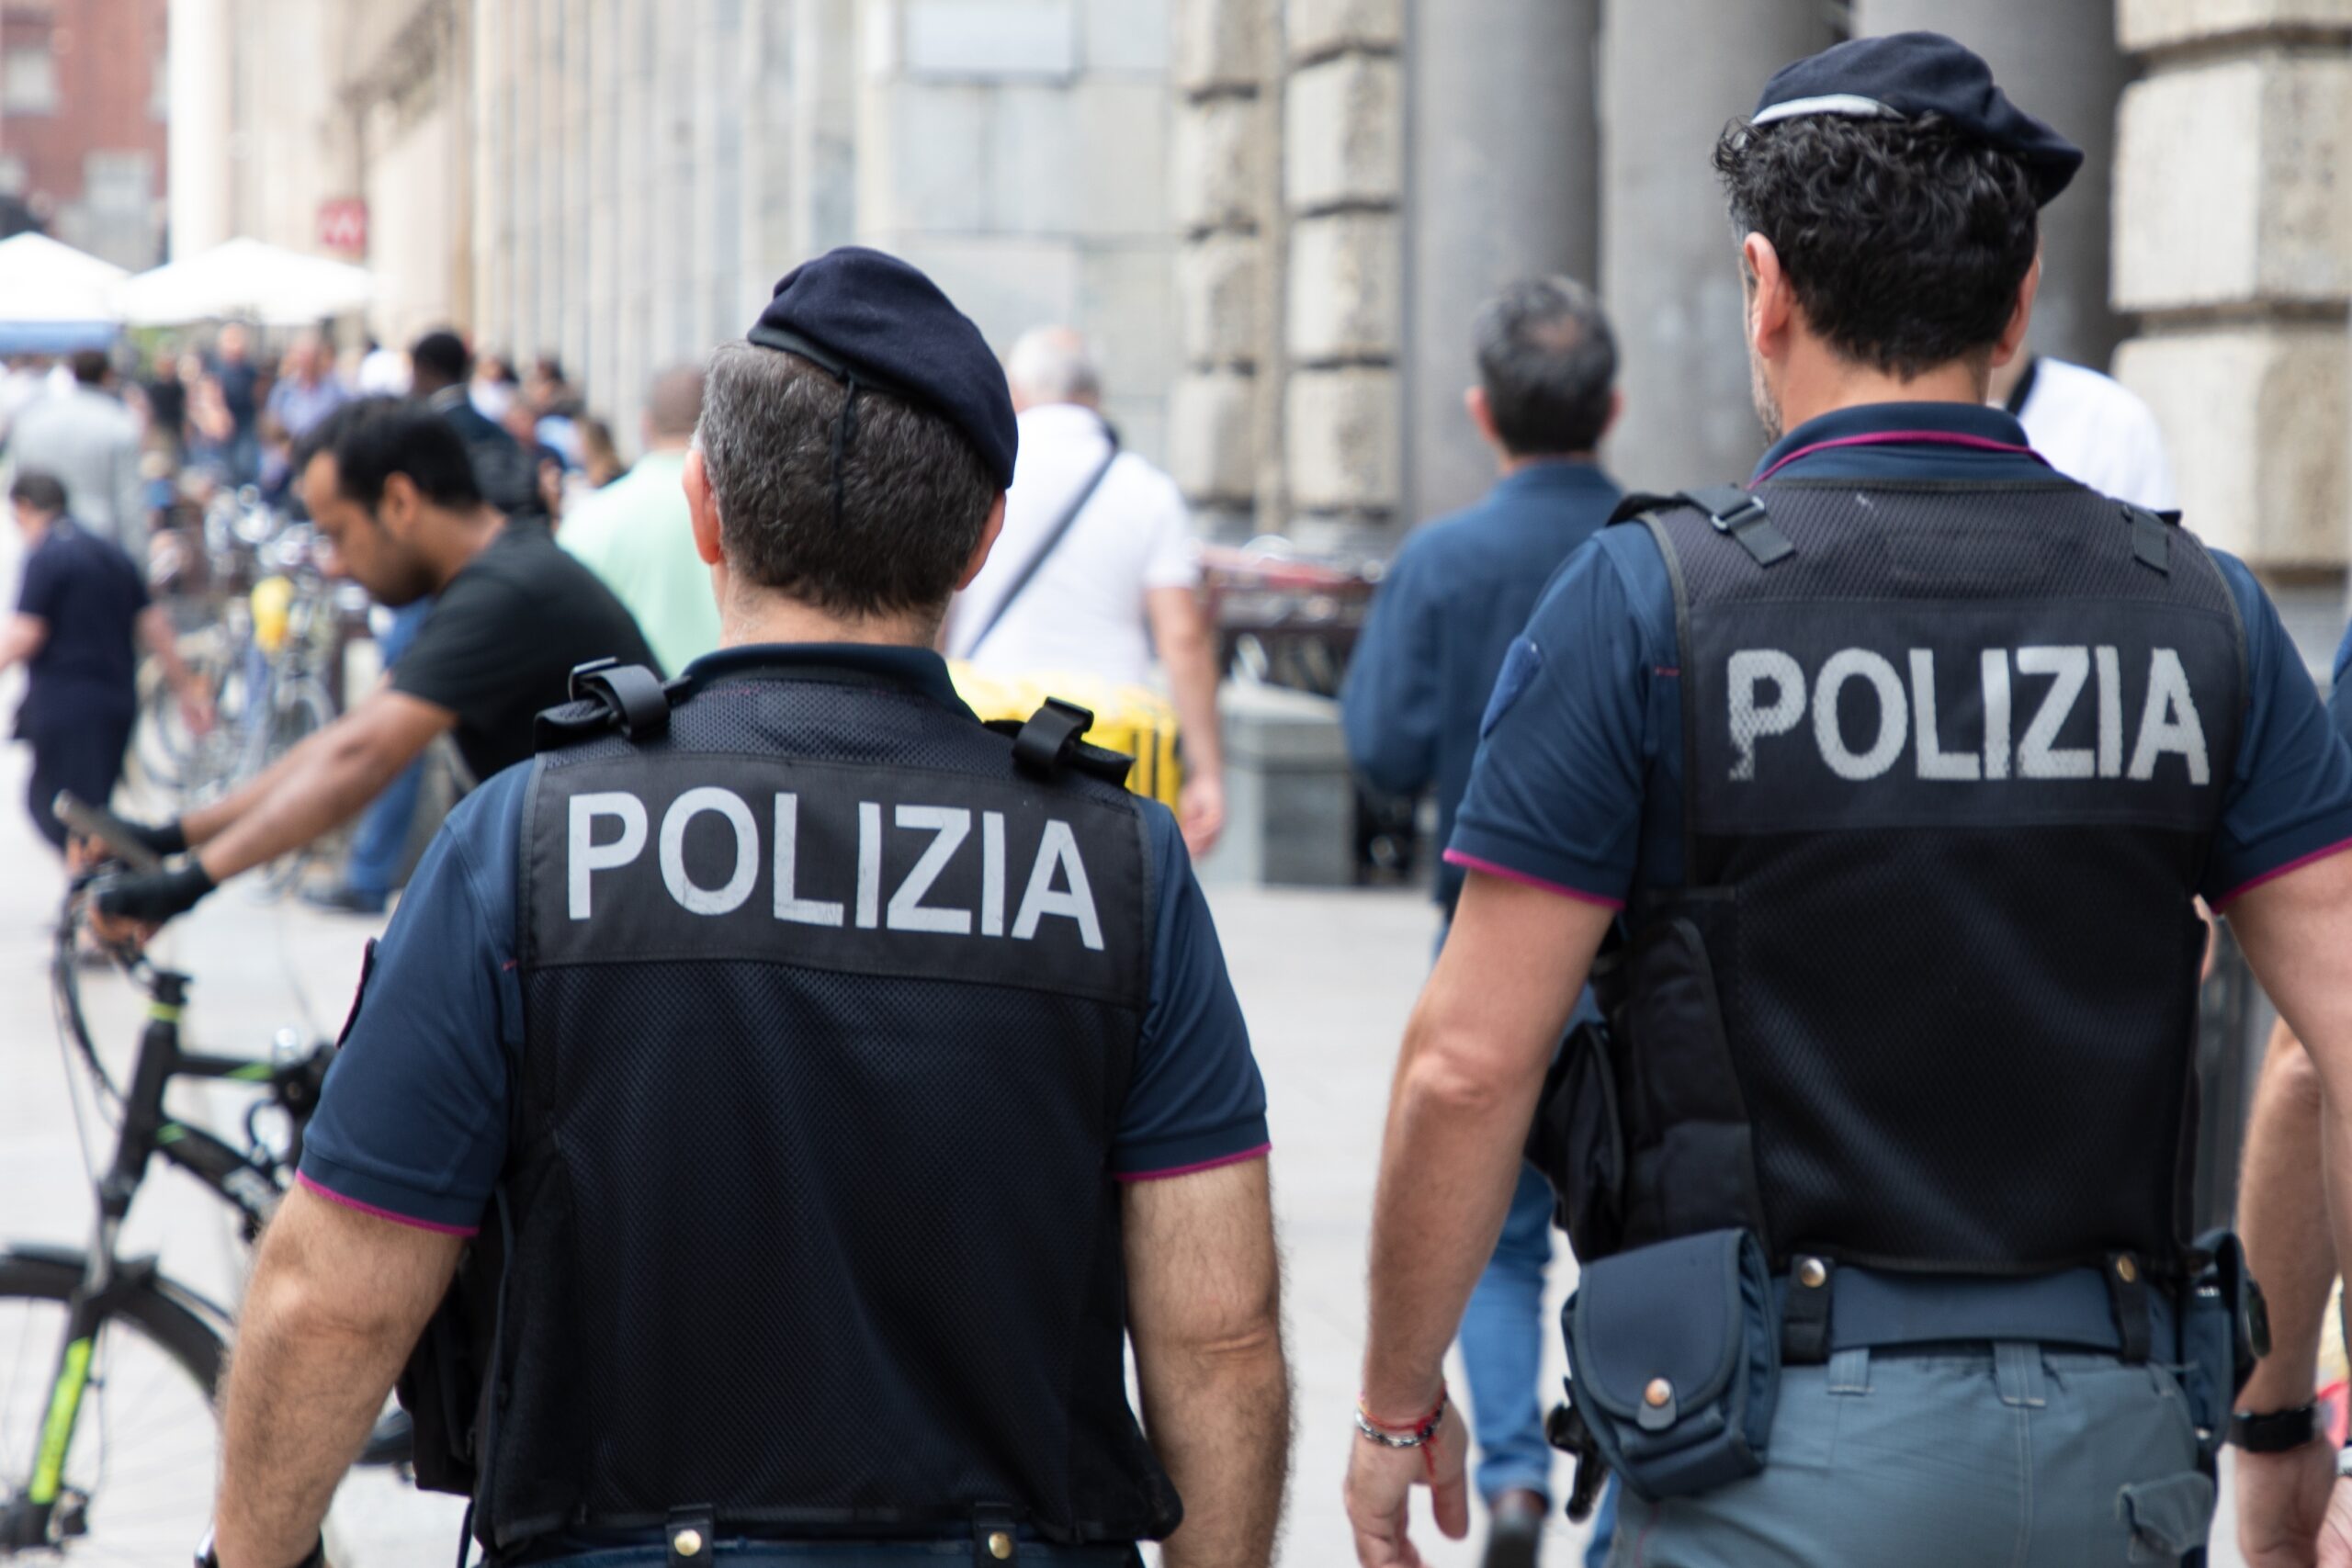 policia italiana robos cubana